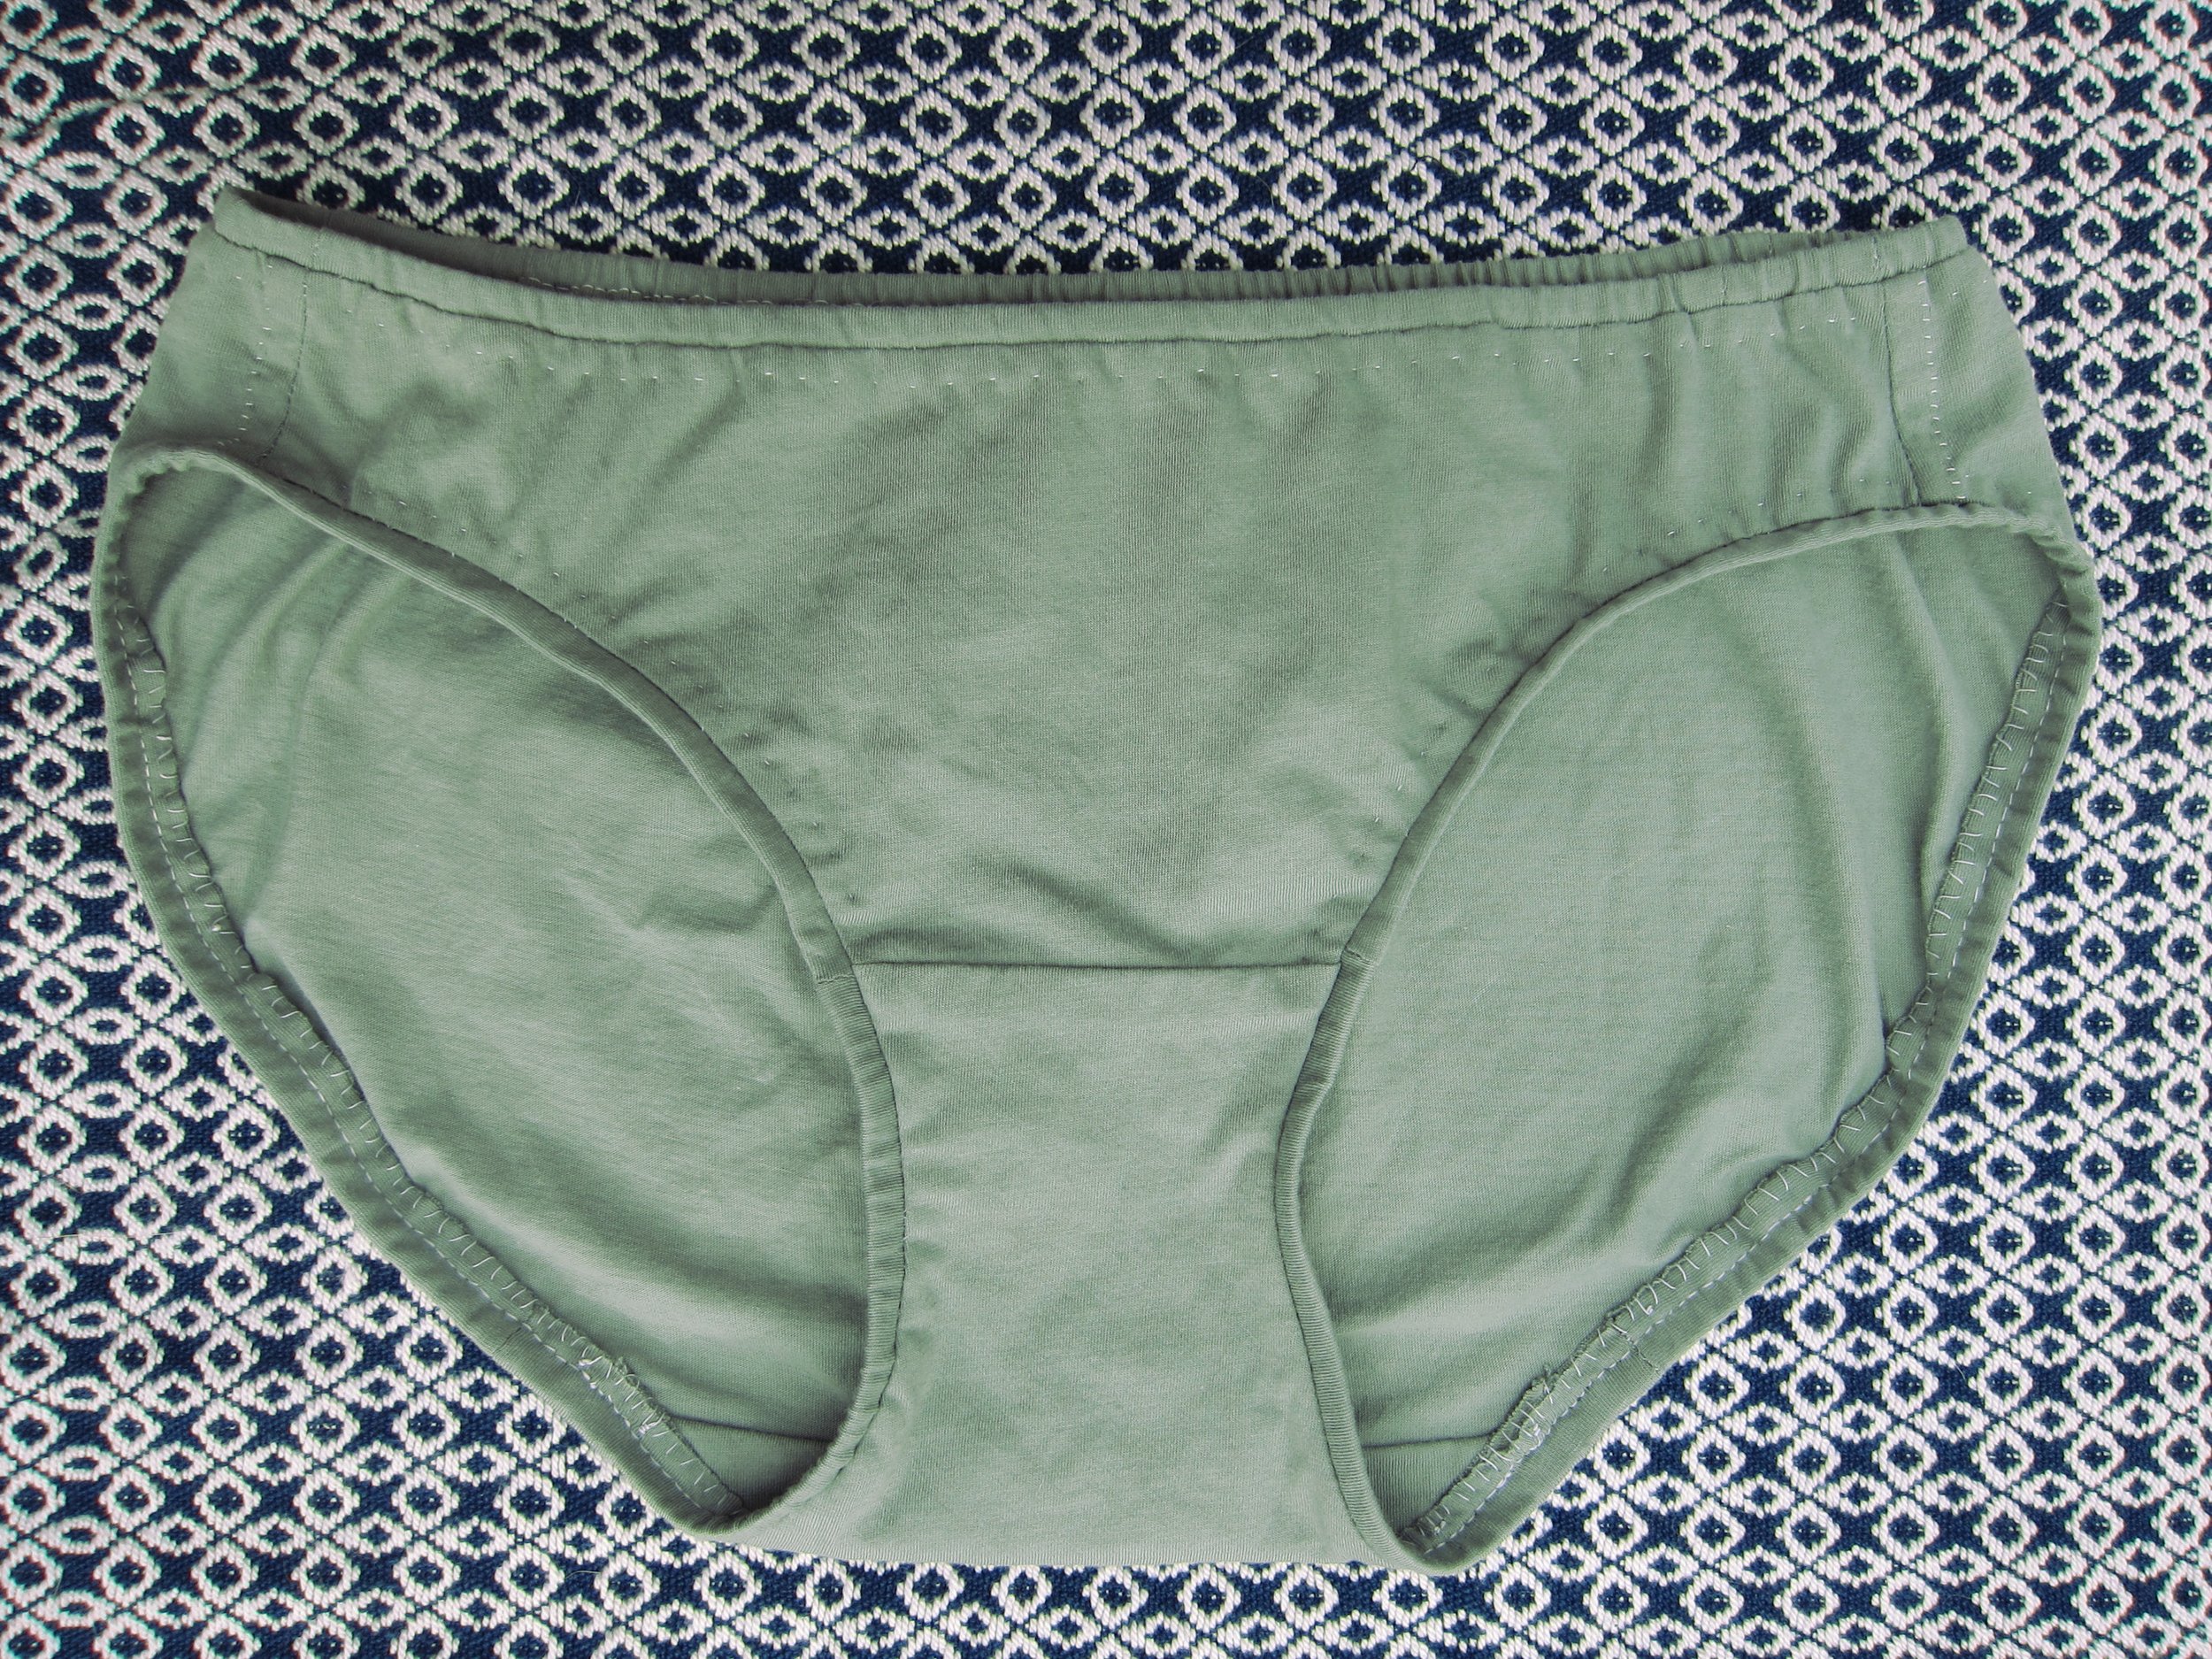 hand sewing underwear — Louisa Merry